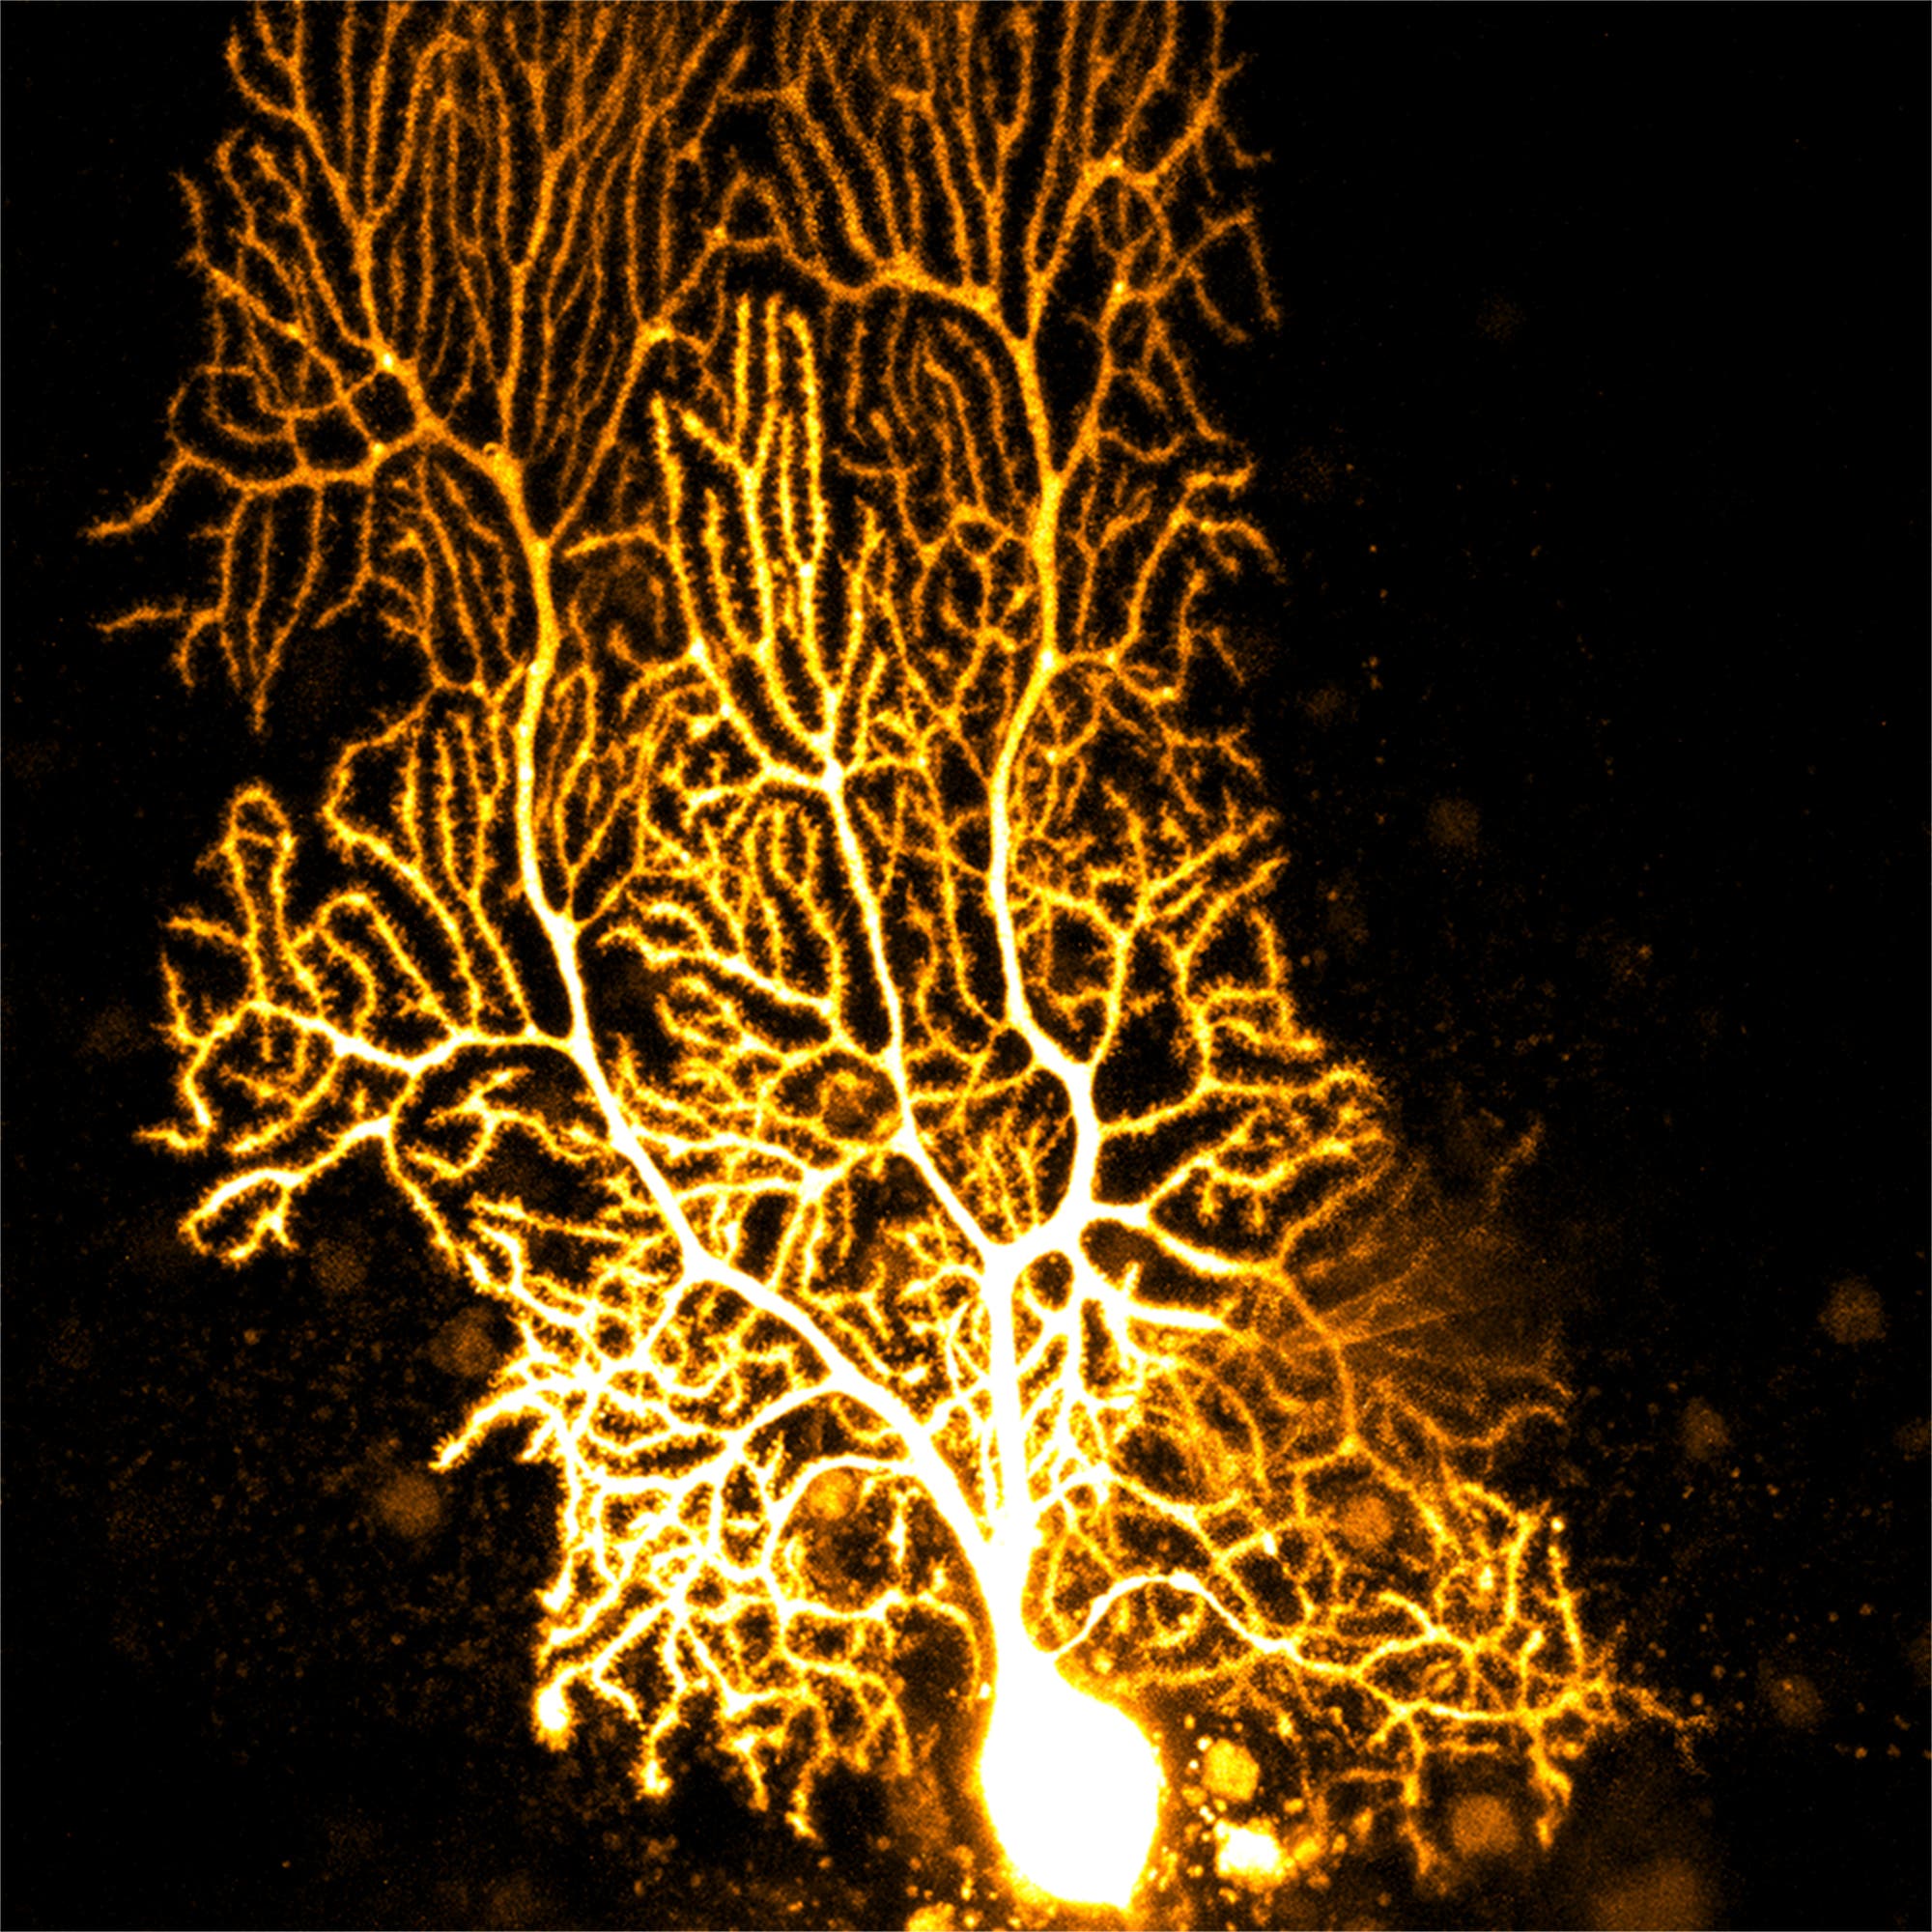 Lichtmikroskopische Aufnahme einer Purkinjezelle (einer weit verzweigten Nervenzelle), die nachträglich gelb eingefärbt wurde